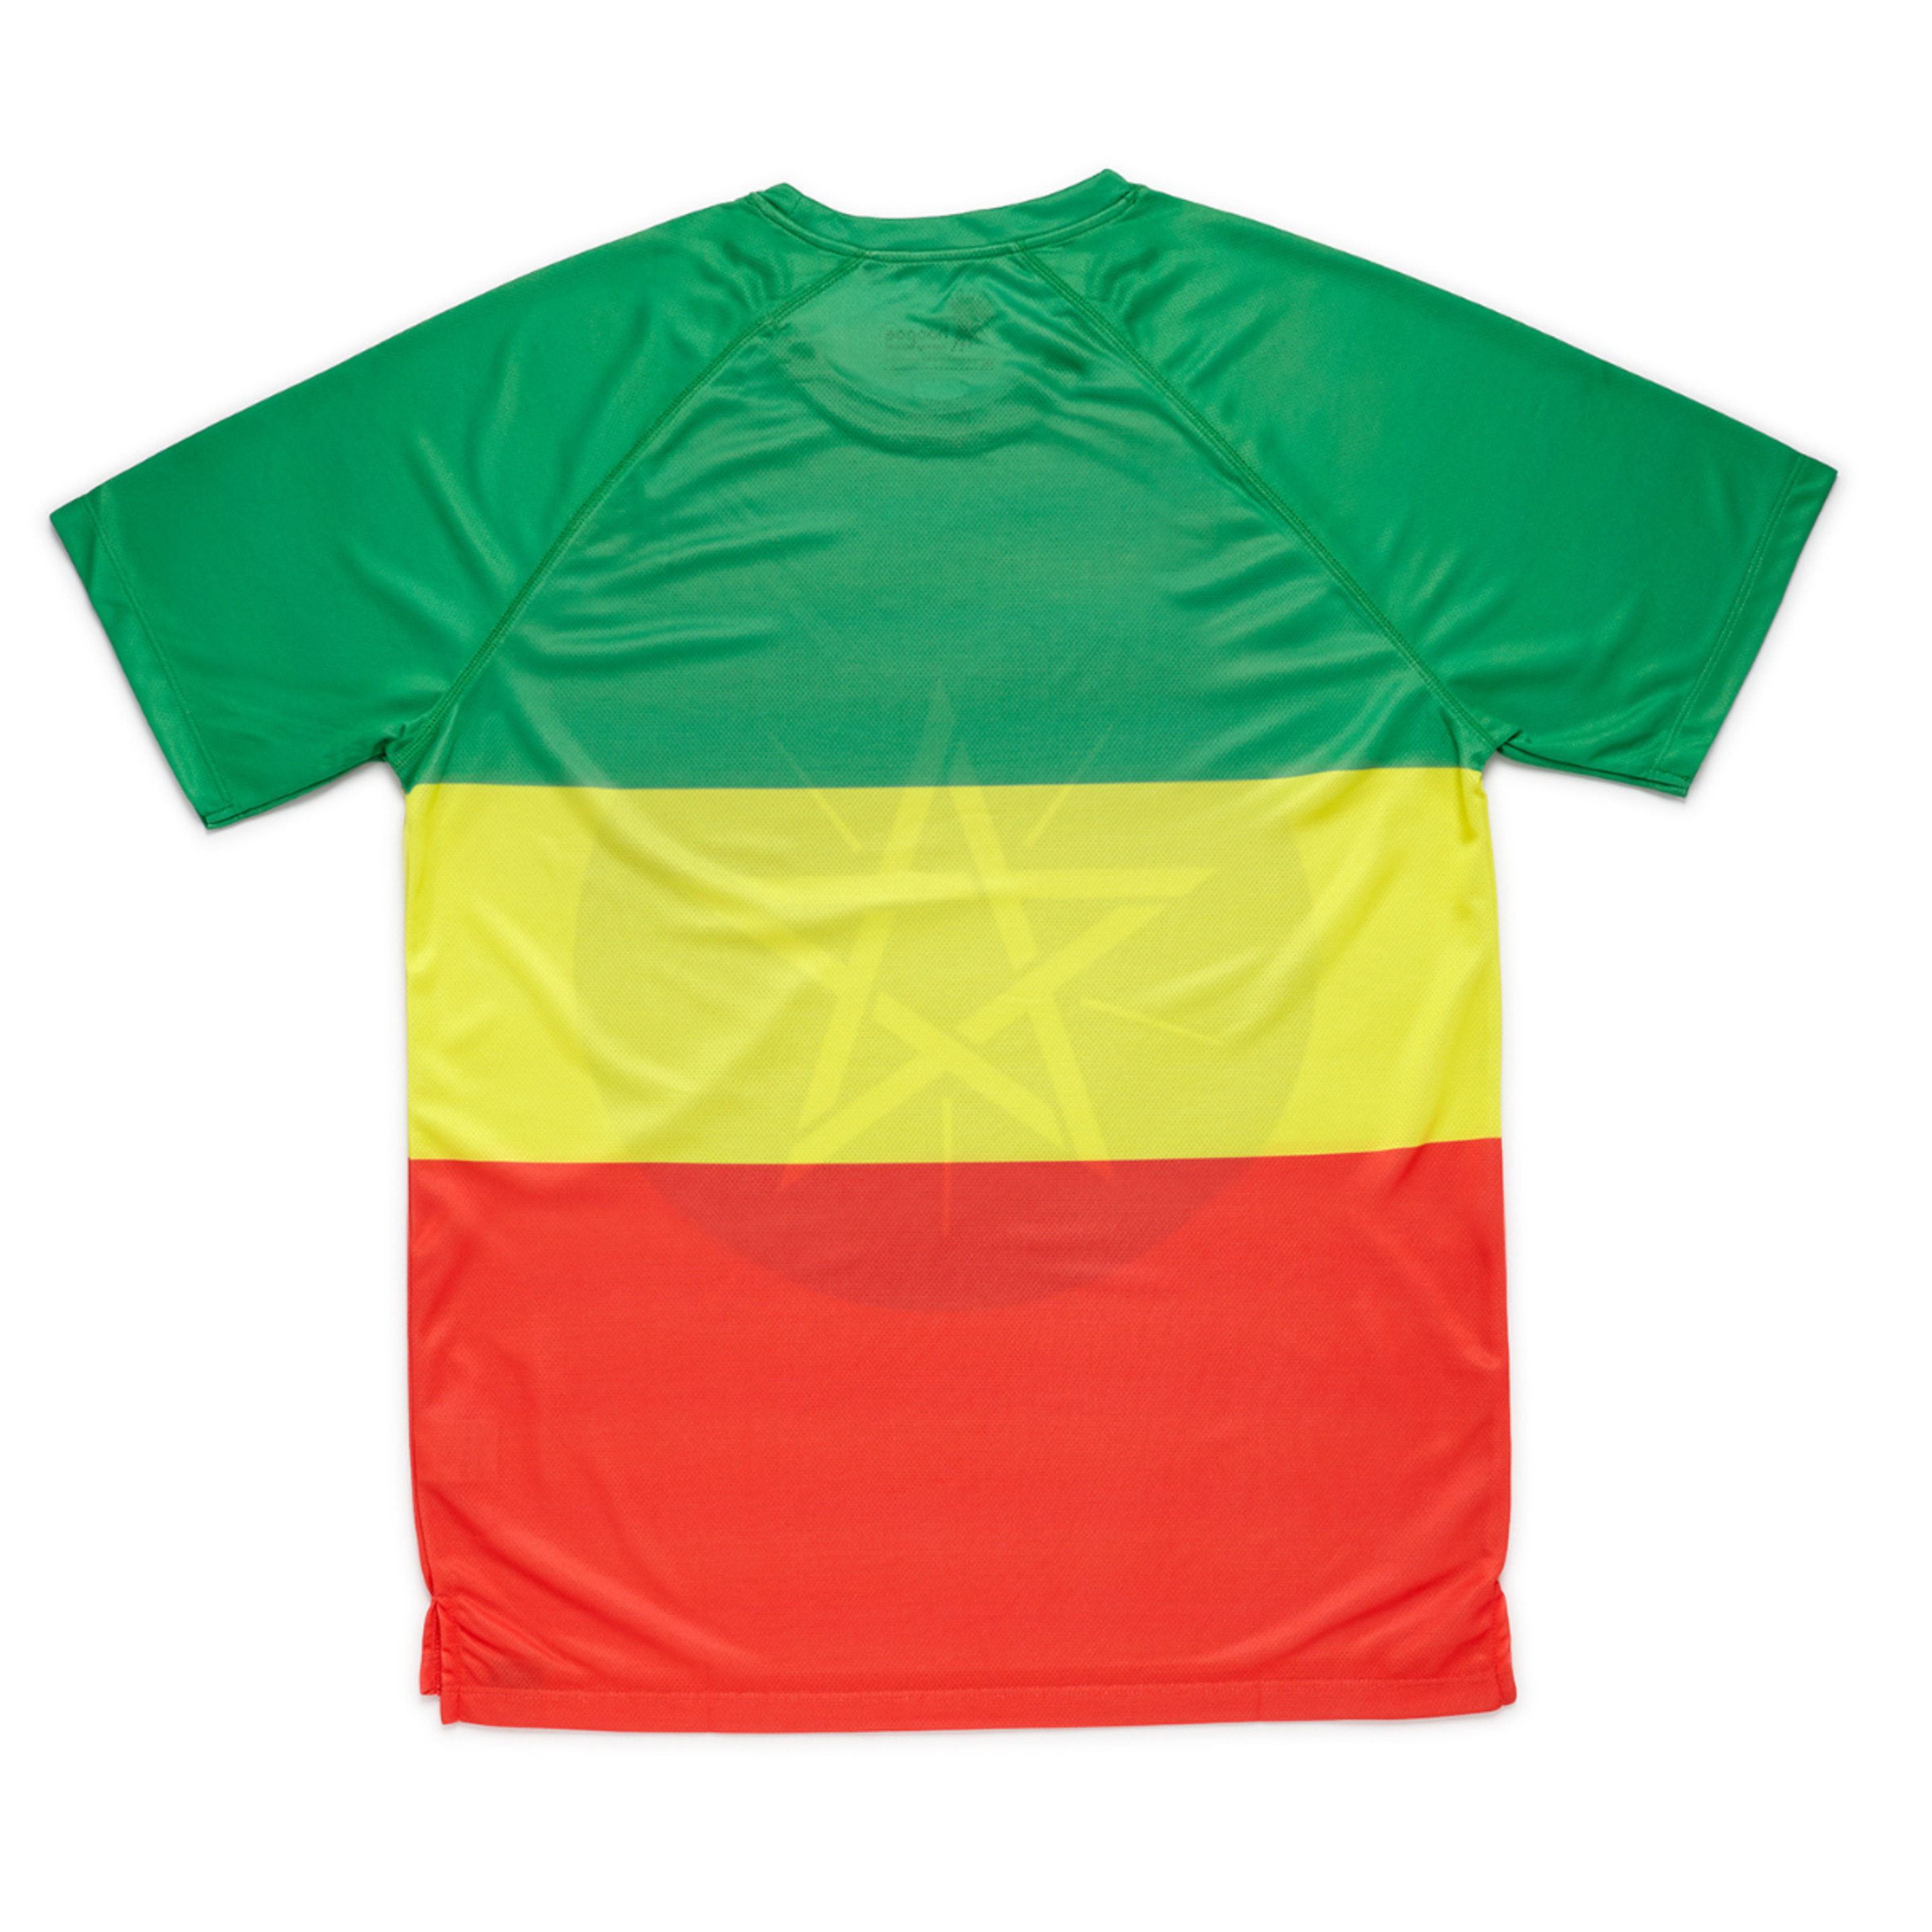 Camiseta De Running Adis Abeba Hoopoe Apparel - multicolor - Divertida, Original Y Molona.  MKP